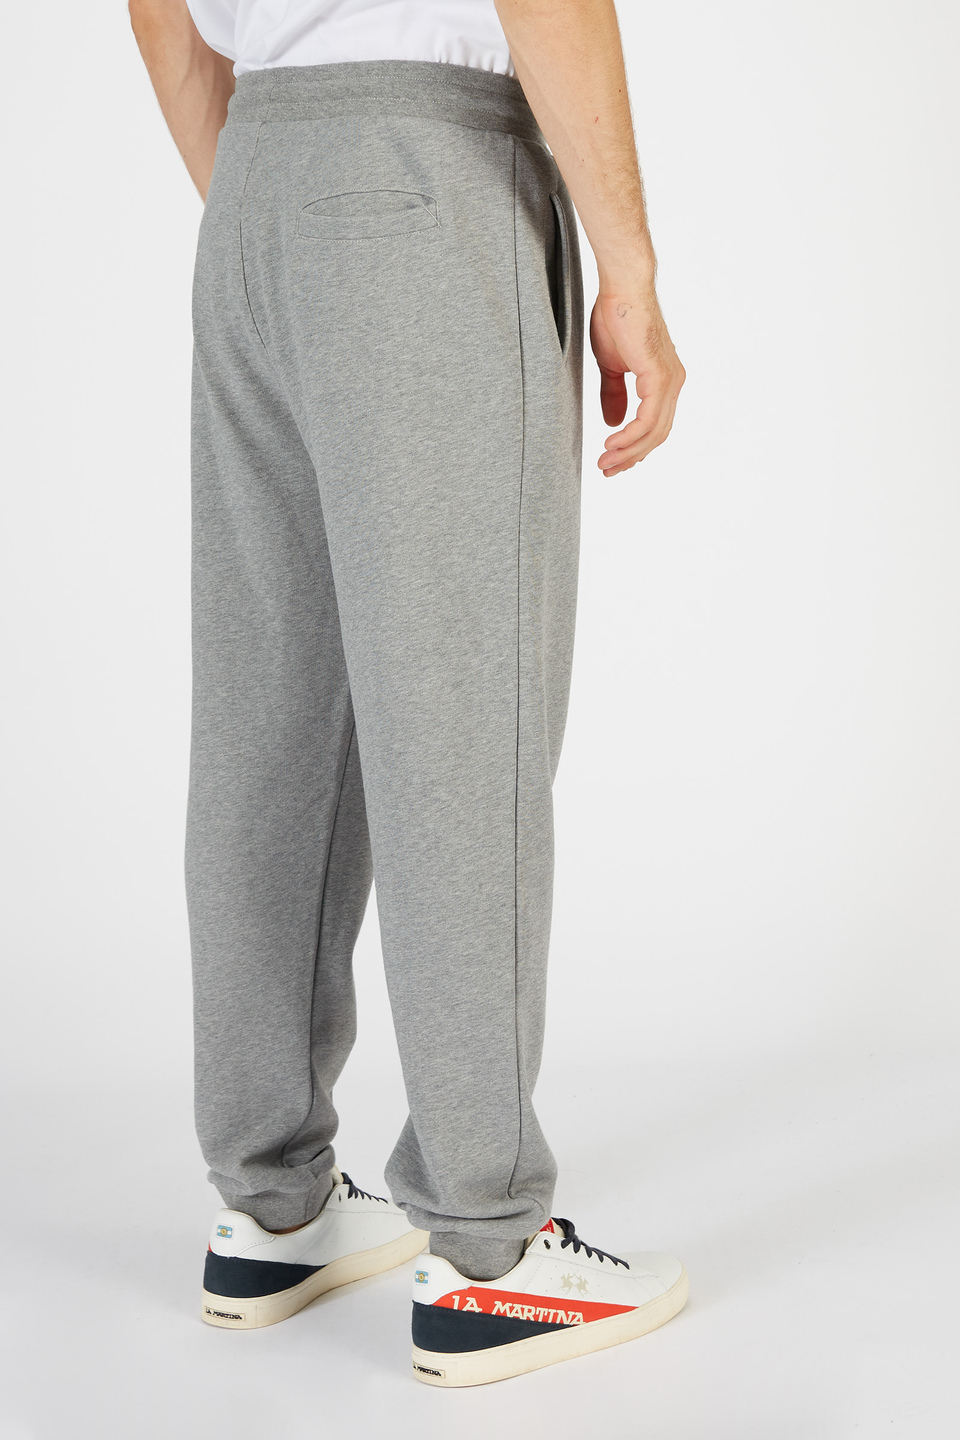 Pantalone da uomo modello jogger in cotone regular fit | La Martina - Official Online Shop